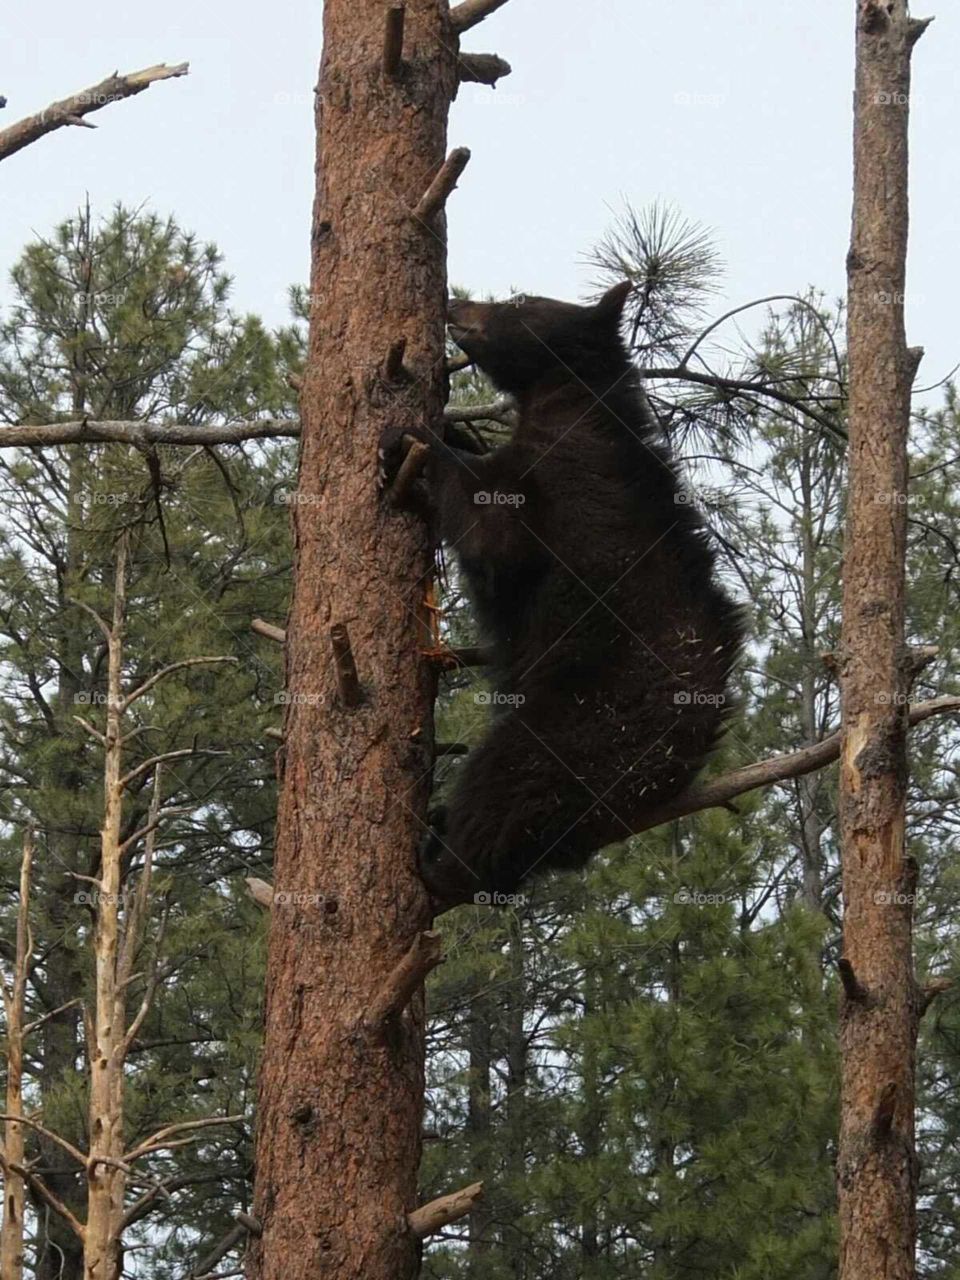 Bear up a tree